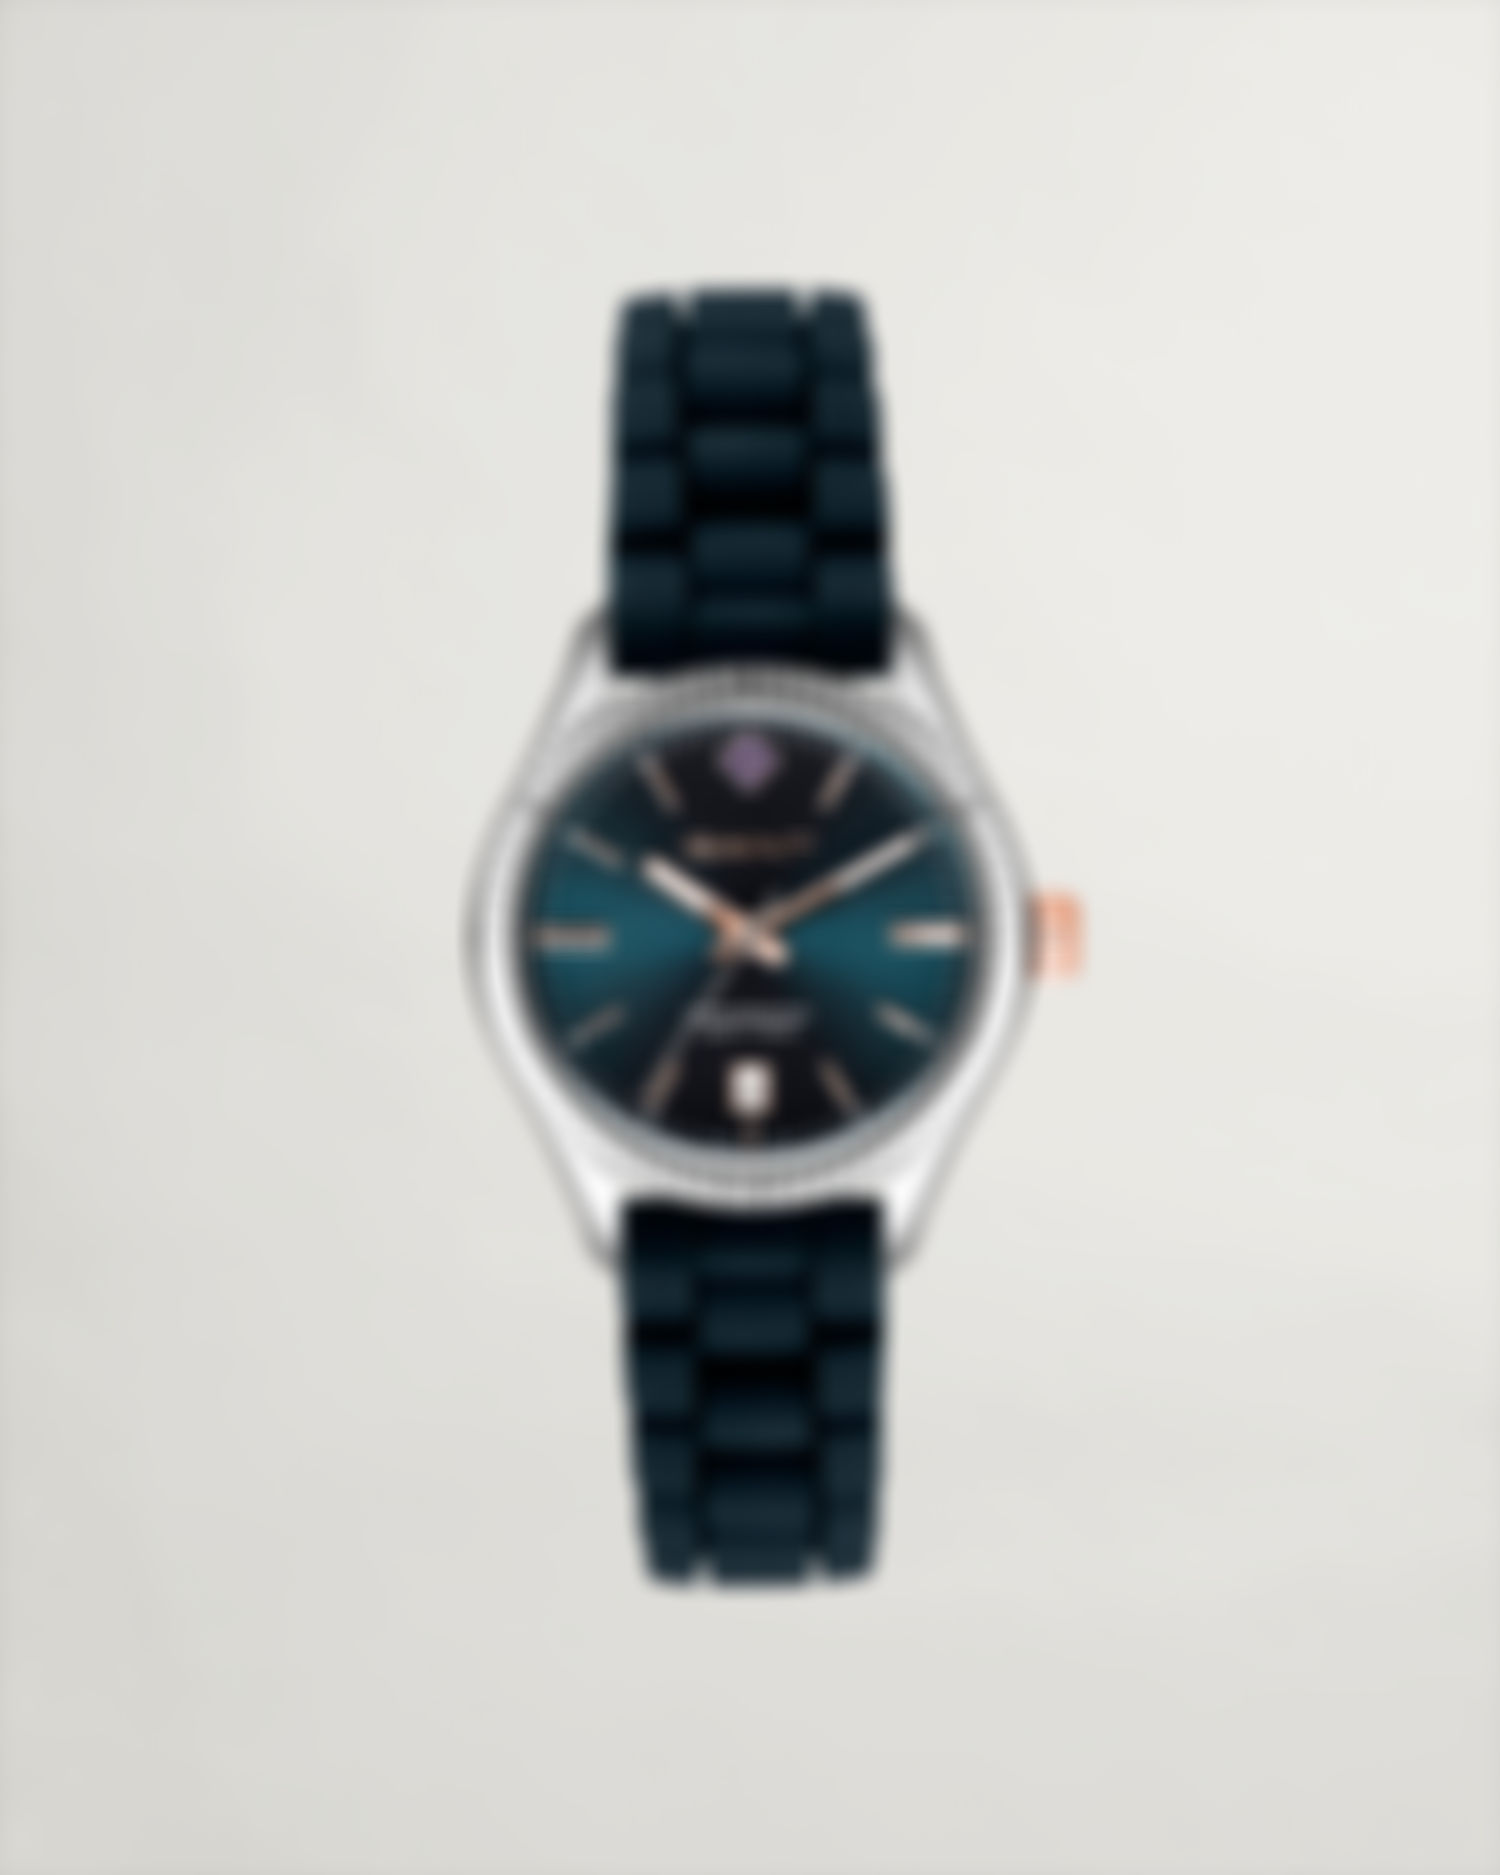 Sussex Wristwatch